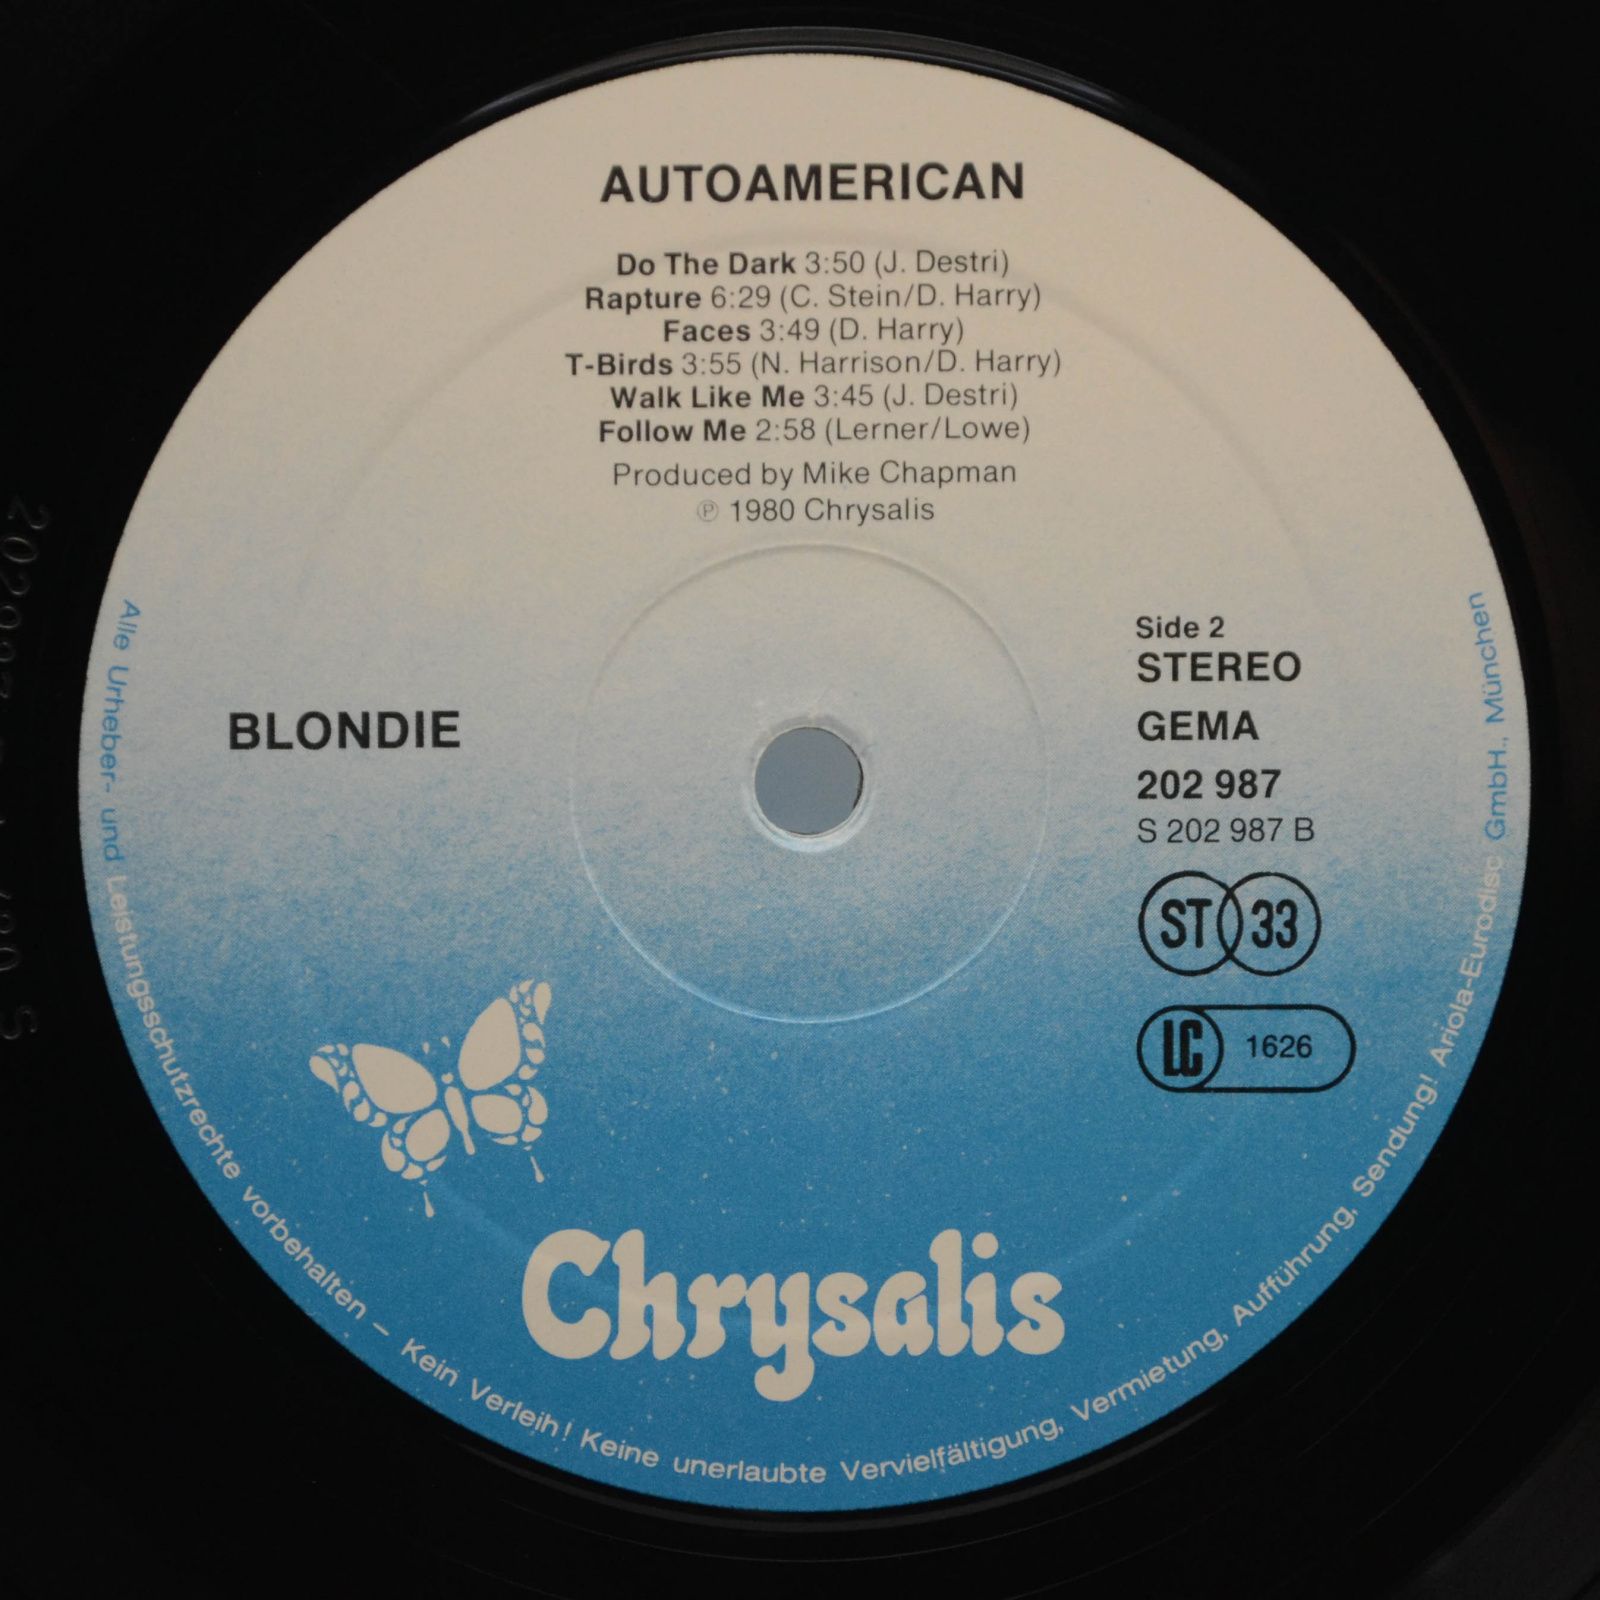 Blondie — AutoAmerican, 1980